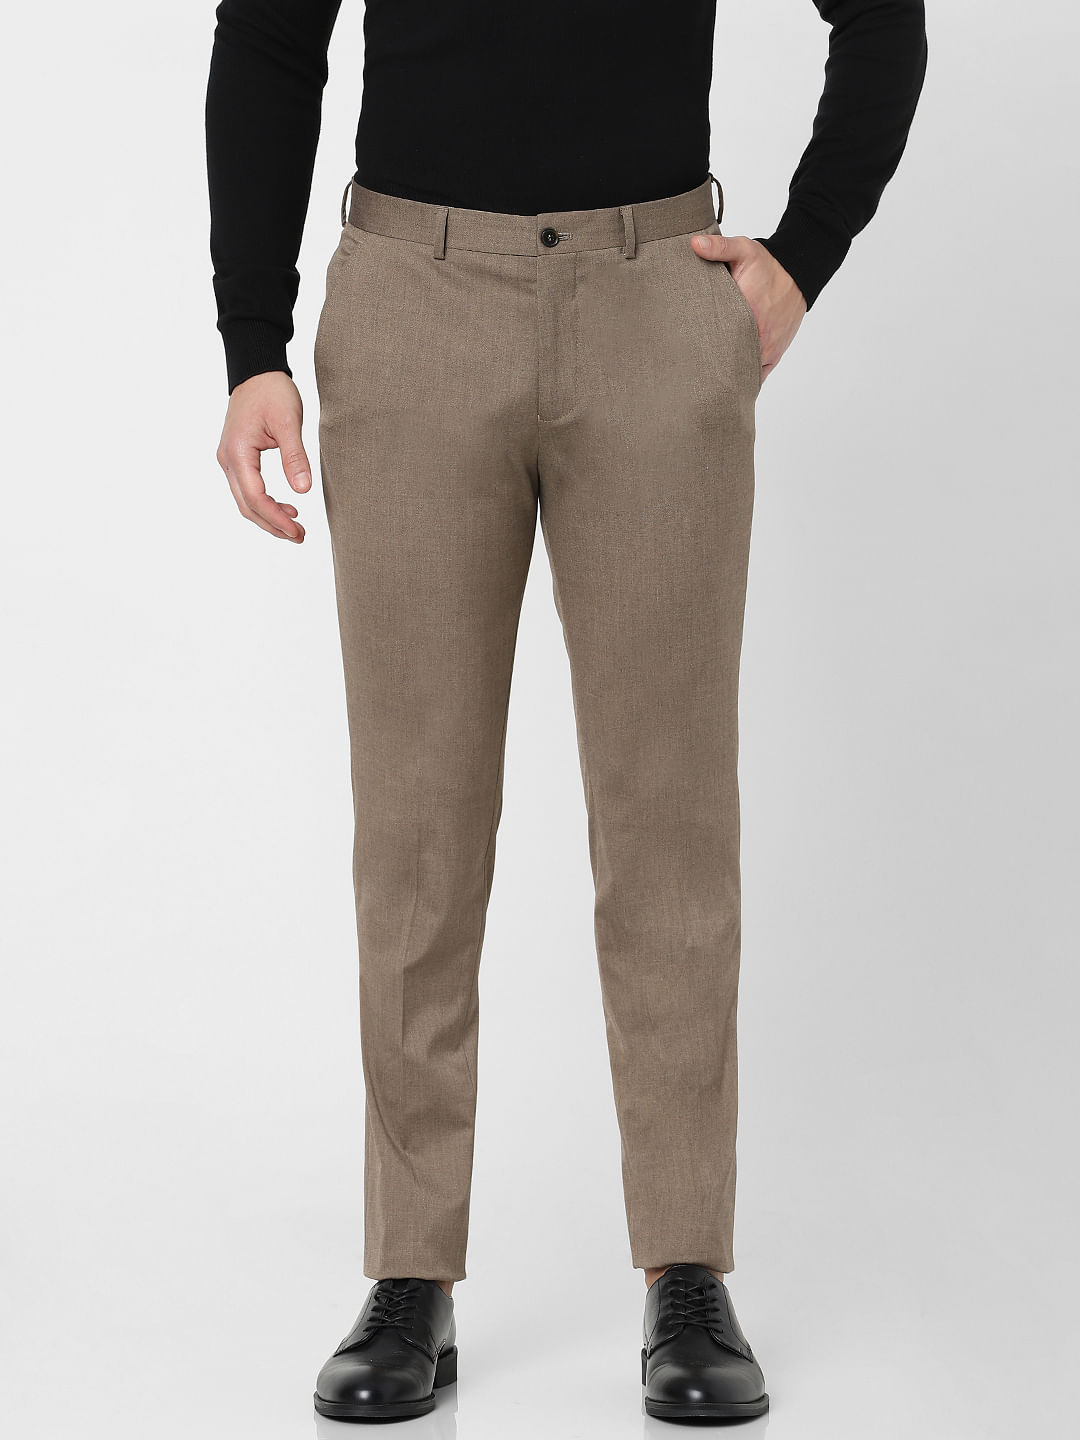 Italian Fit Men Trousers - Buy Italian Fit Men Trousers online in India